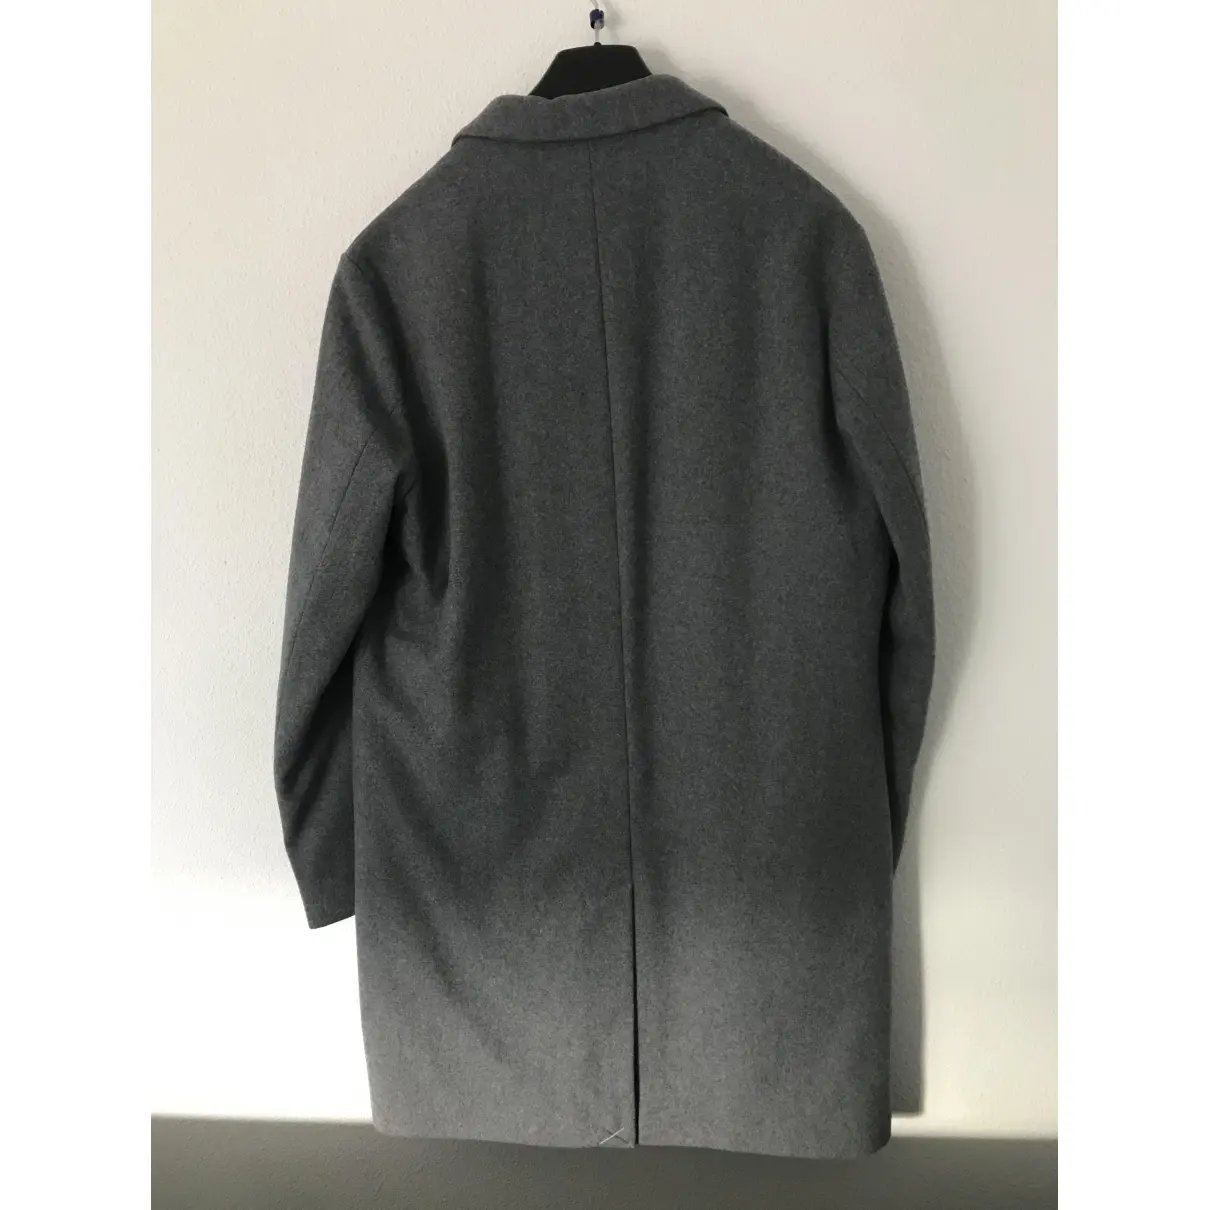 Buy Benetton Wool coat online